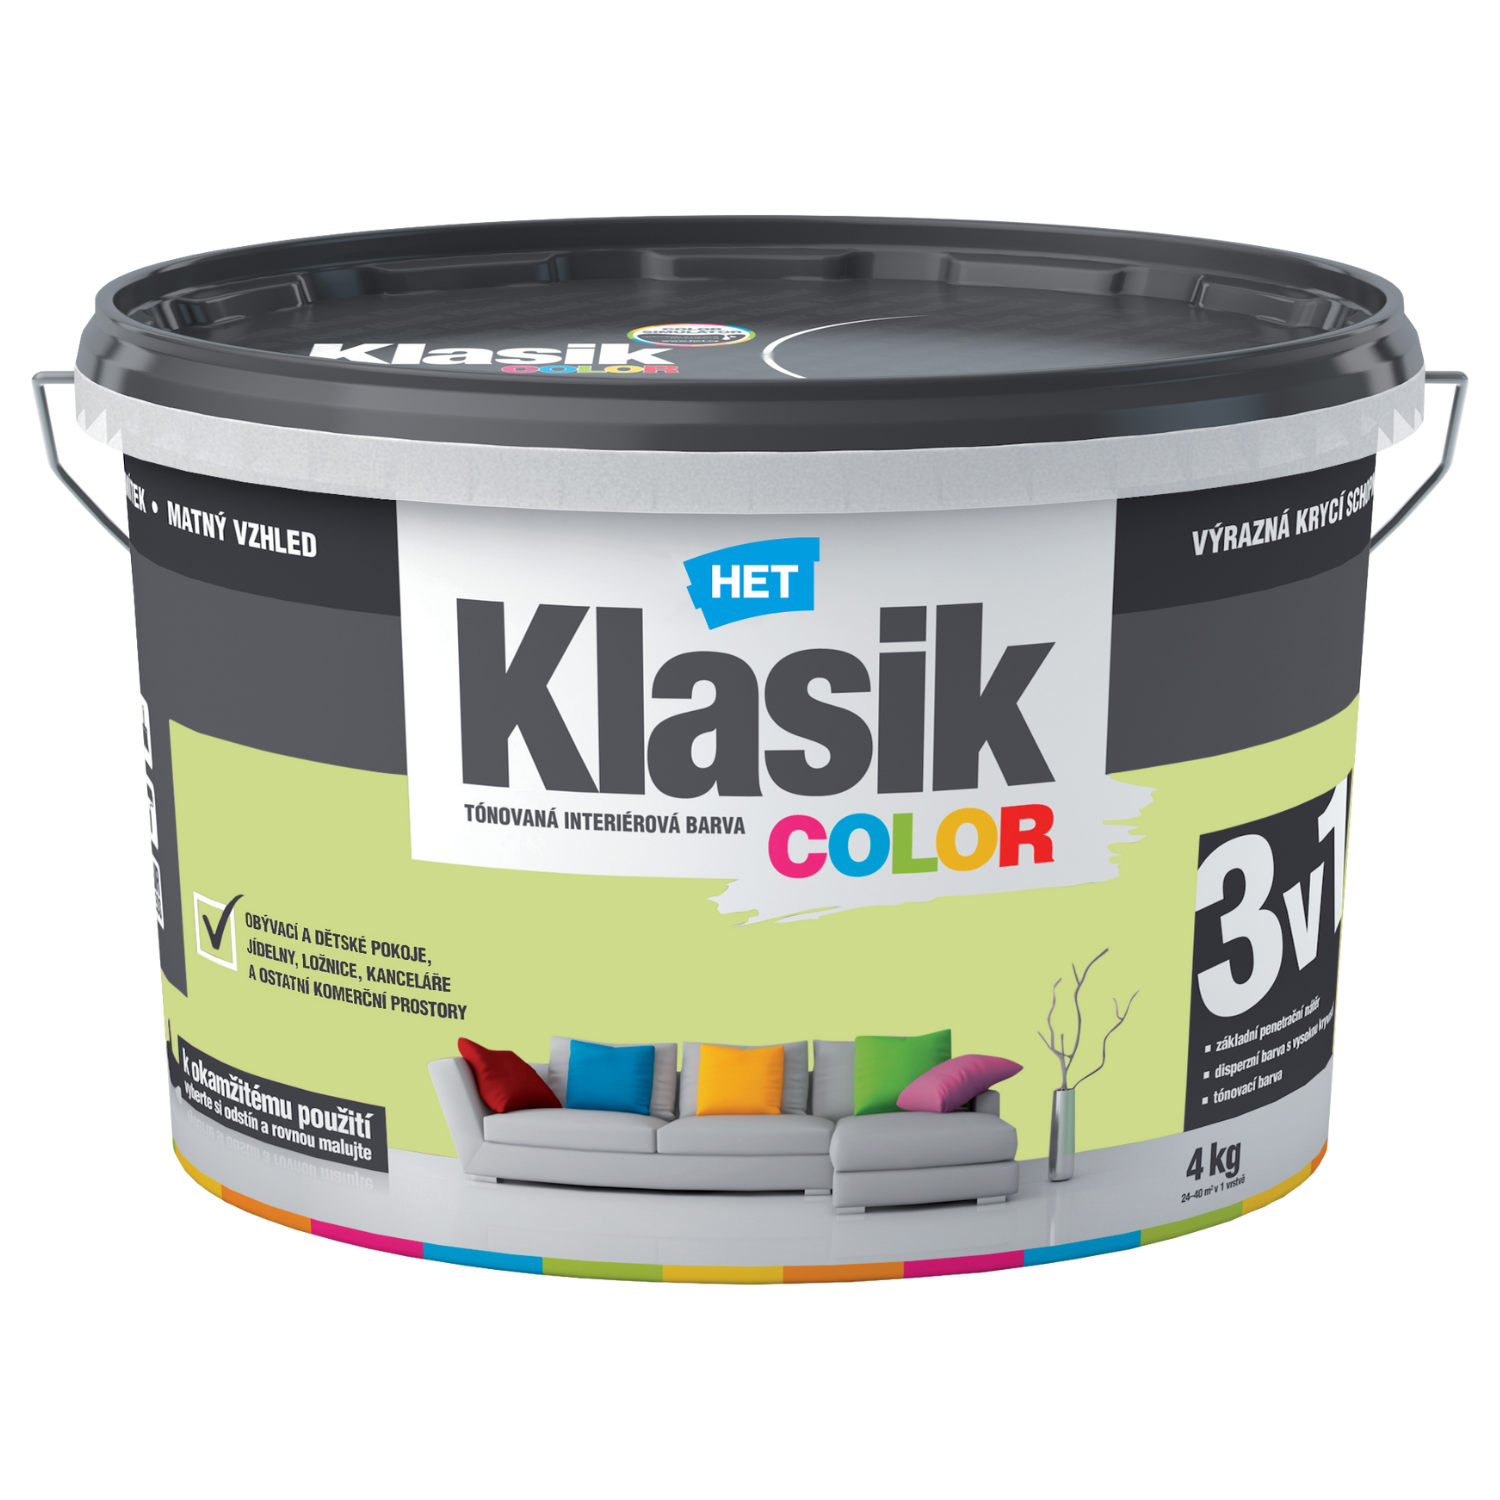 HET Klasik COLOR tónovaná interiérová akrylátová disperzná oteruvzdorná farba 4 kg, KC0487 - modrý tyrkysový